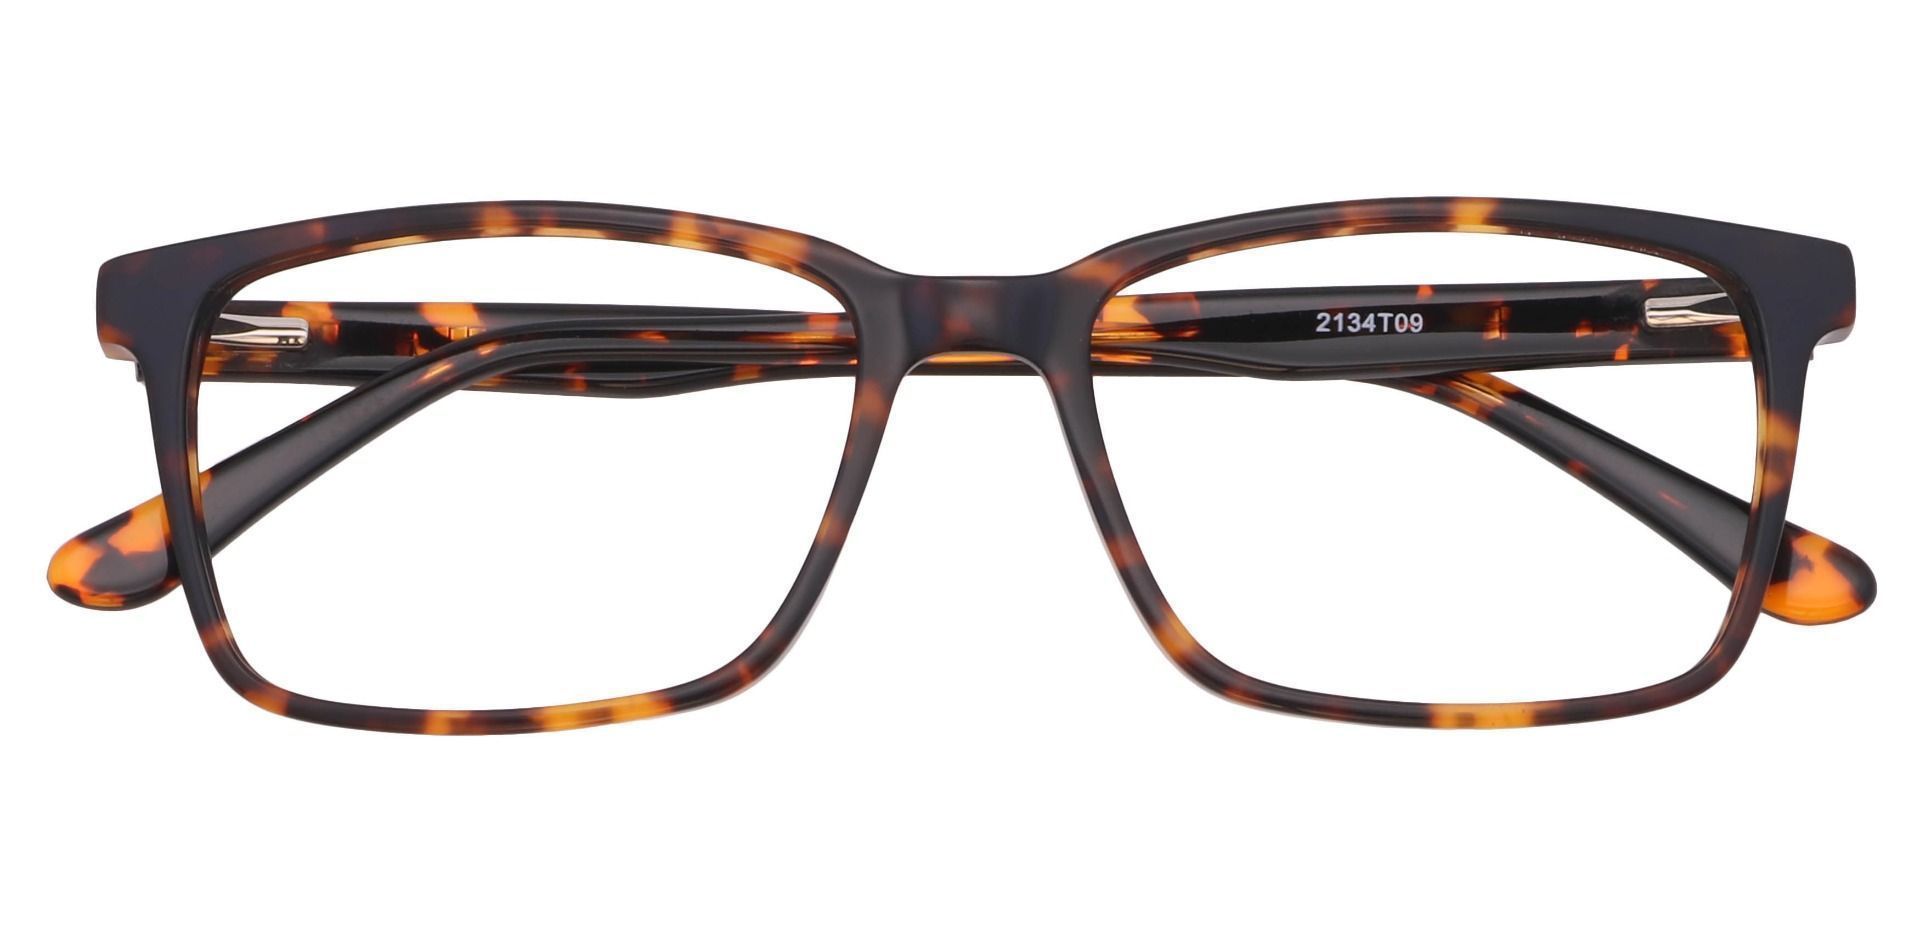 Venice Rectangle Eyeglasses Frame - Tortoise